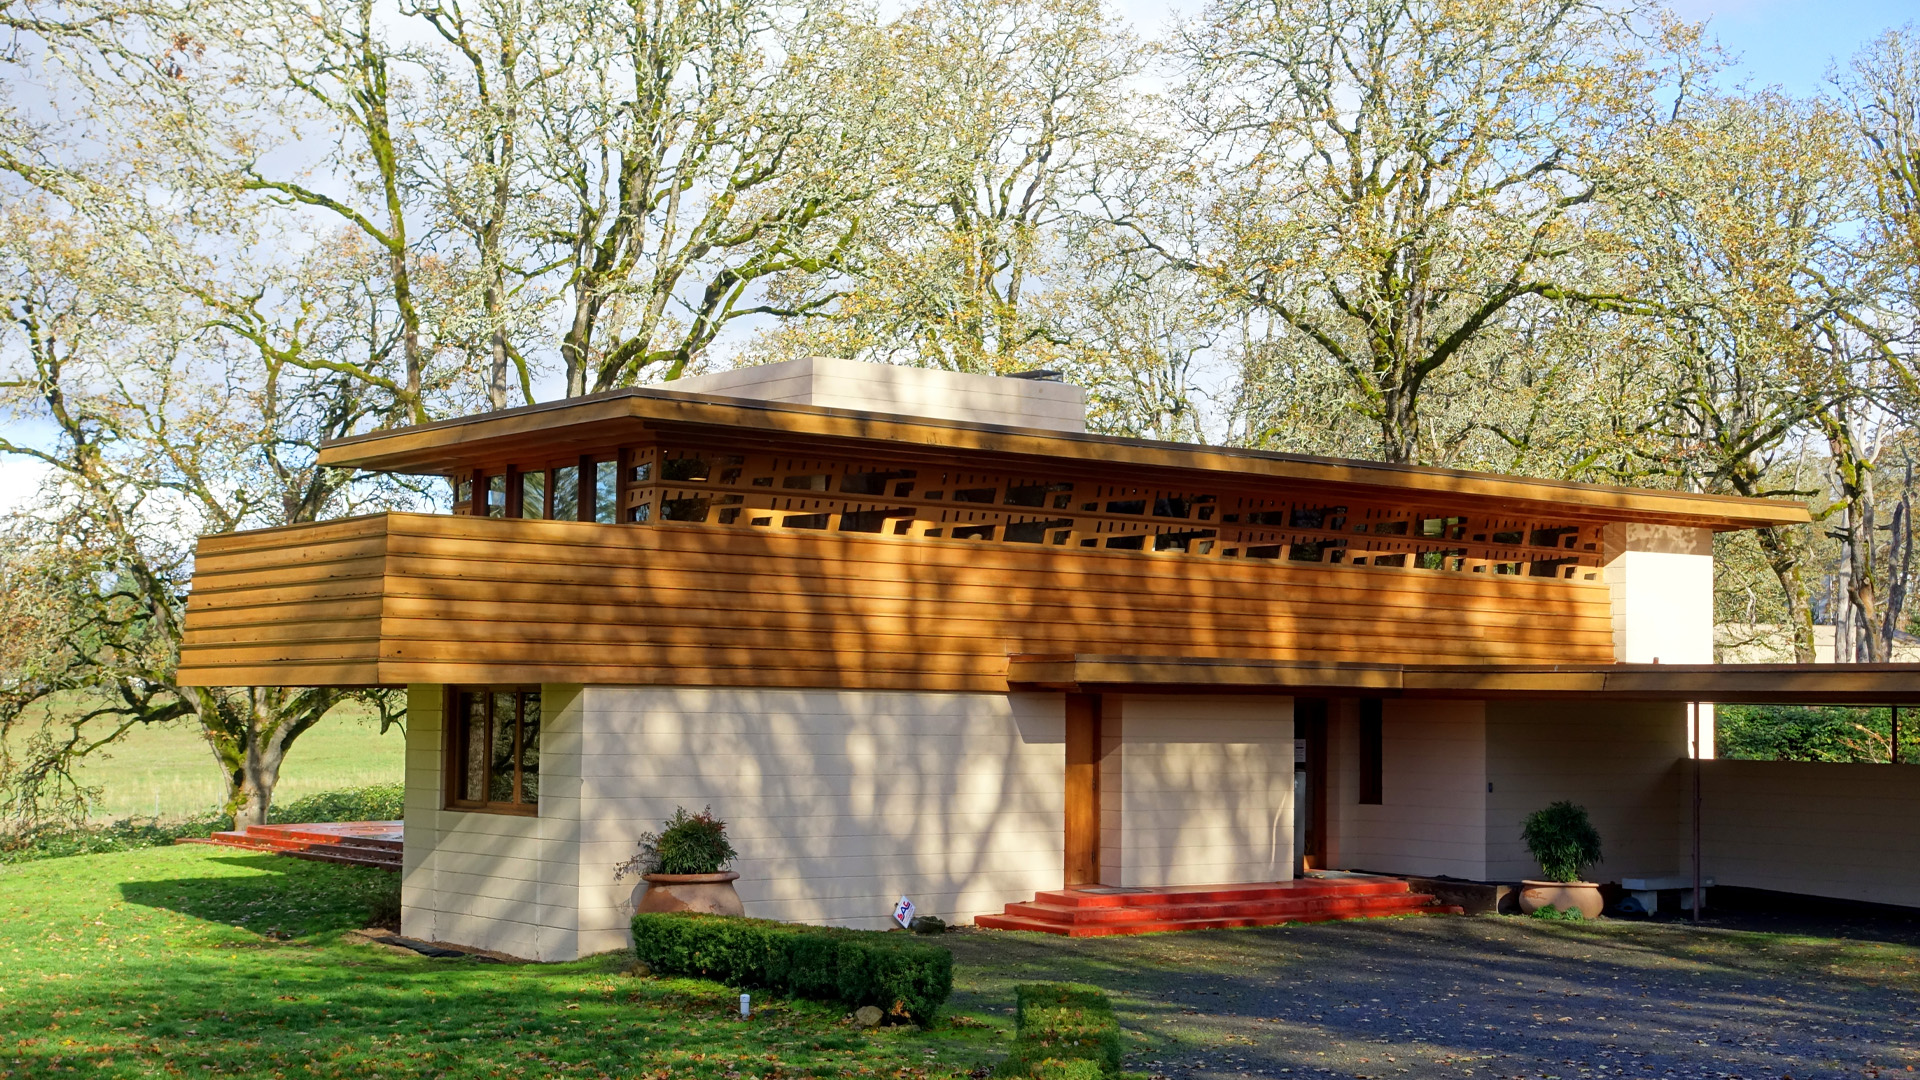 Casa diseñada por Frank Lloyd Wright, otro de los arquitectos más famosos del mundo